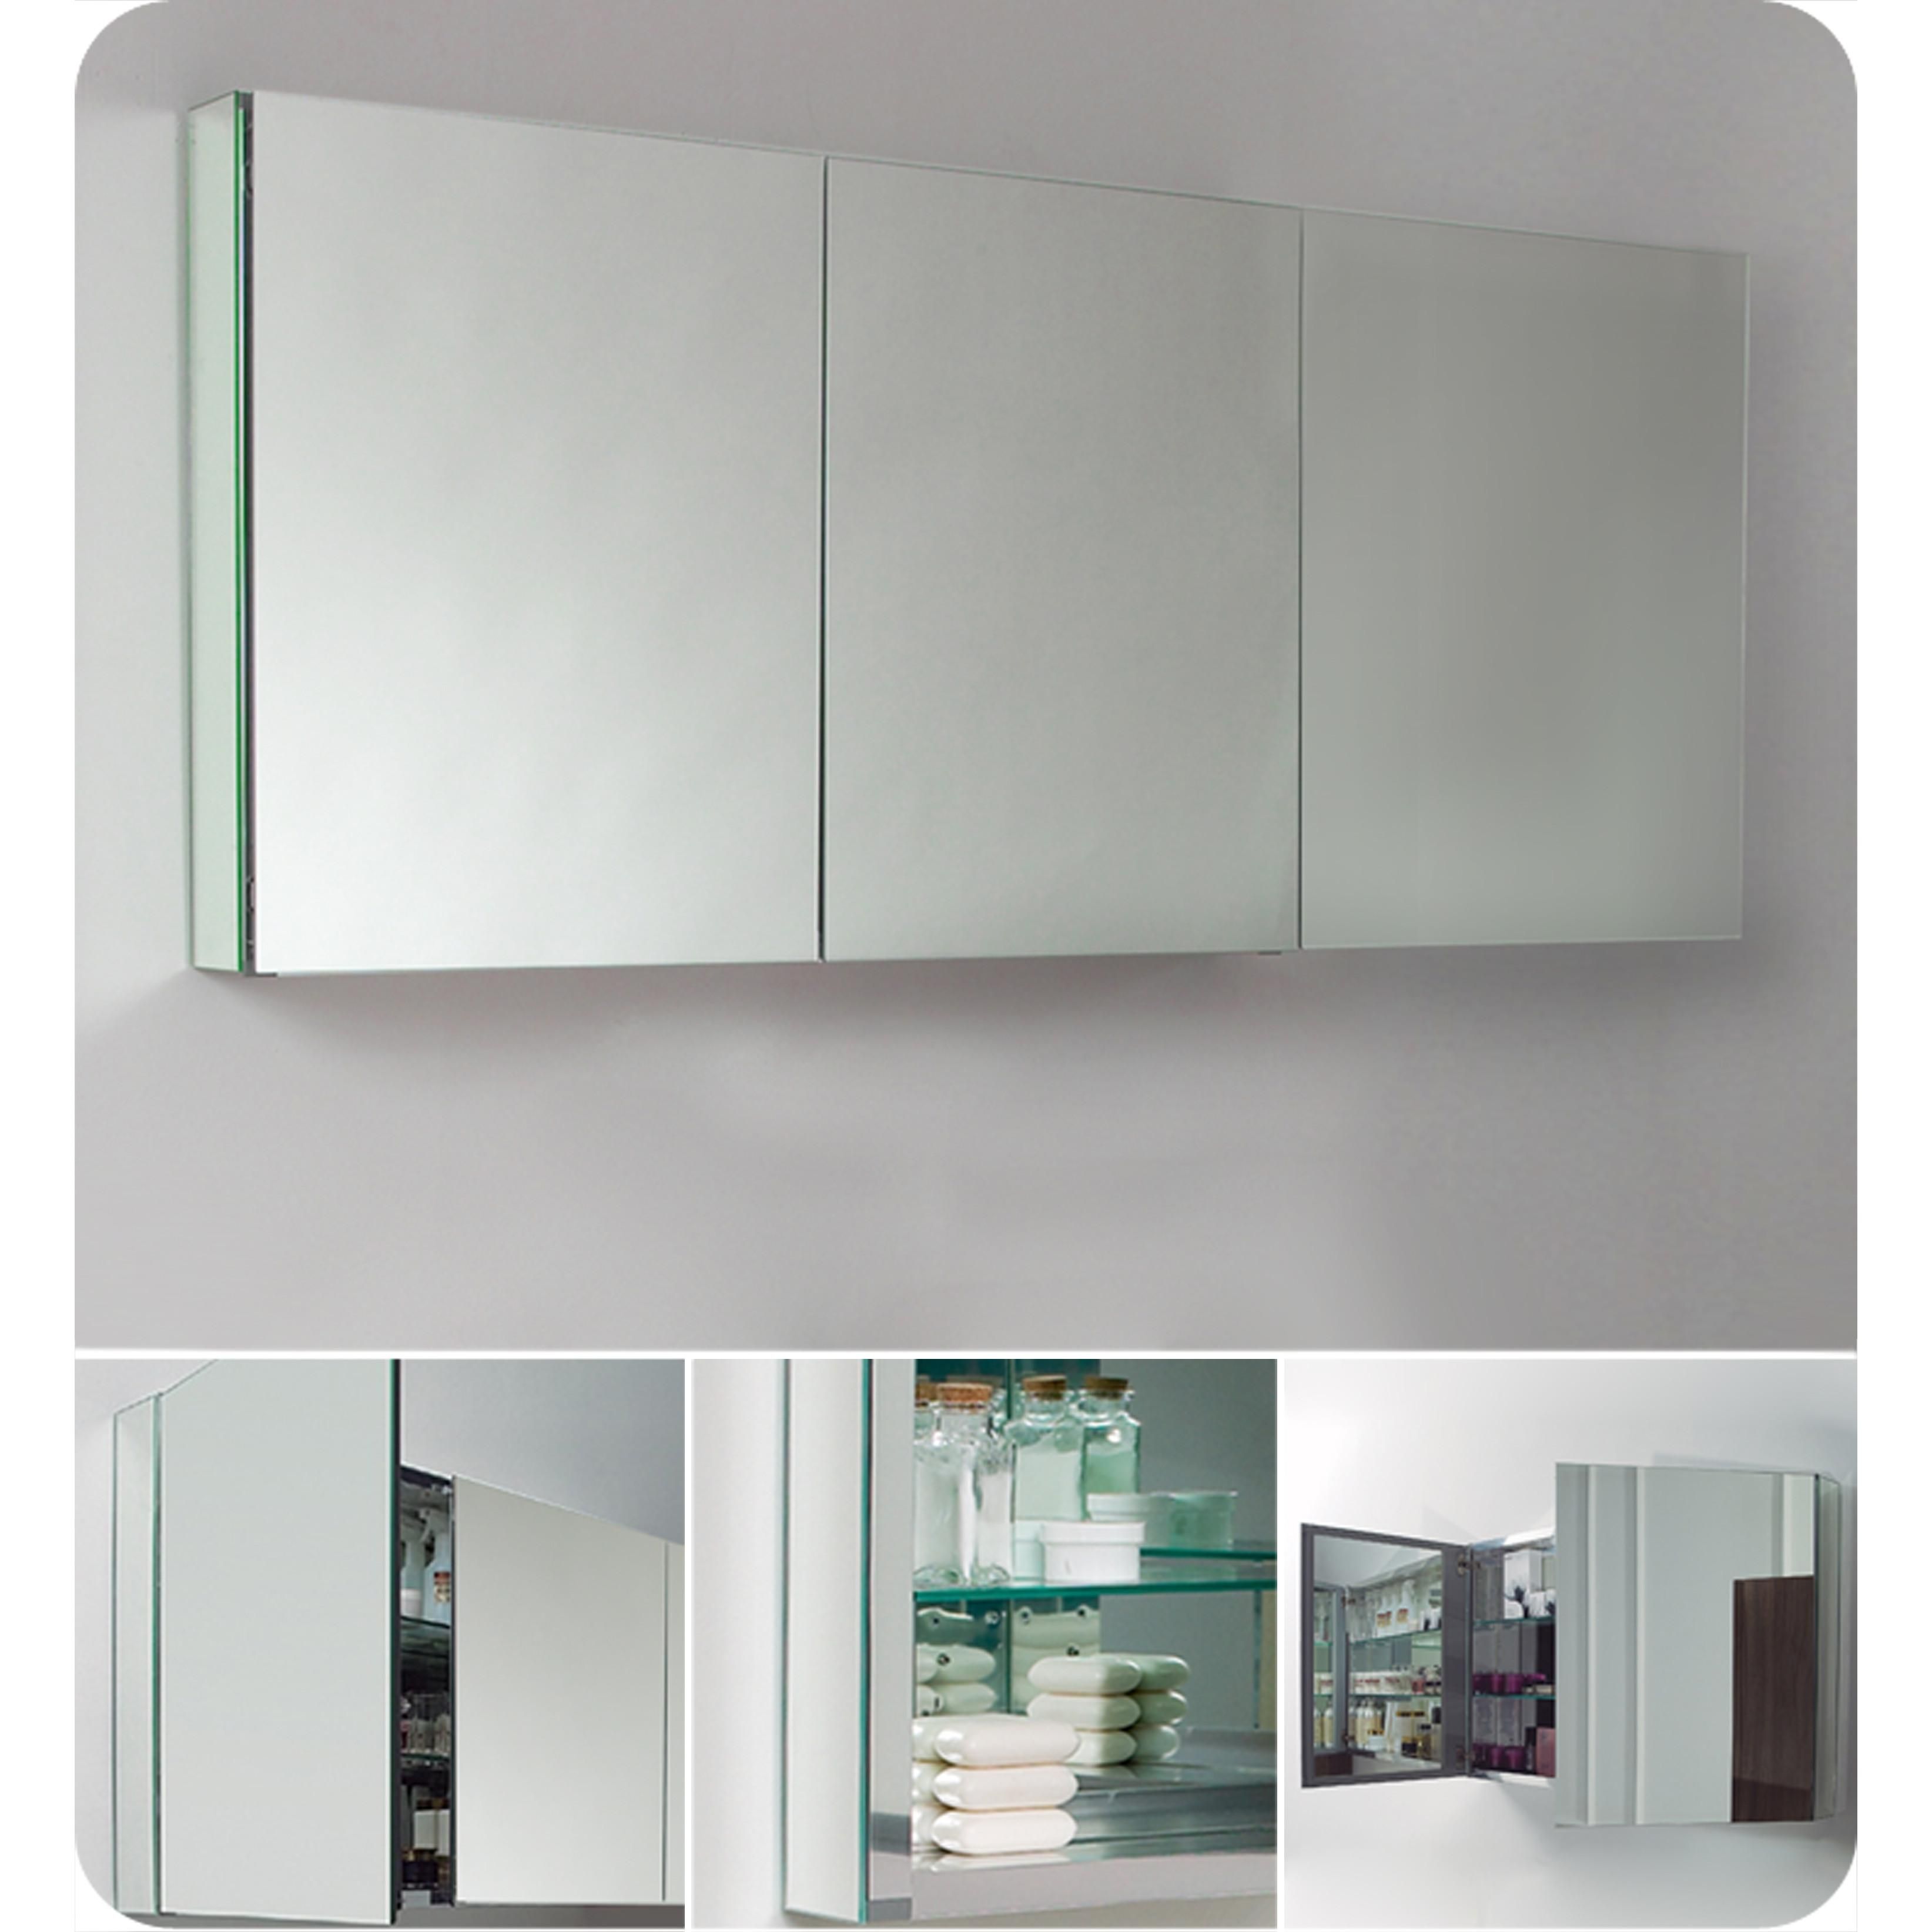 3 Door Medicine Cabinets With Mirrors 17 With 3 Door Medicine Inside 3 Door Medicine Cabinets With Mirrors (View 2 of 20)